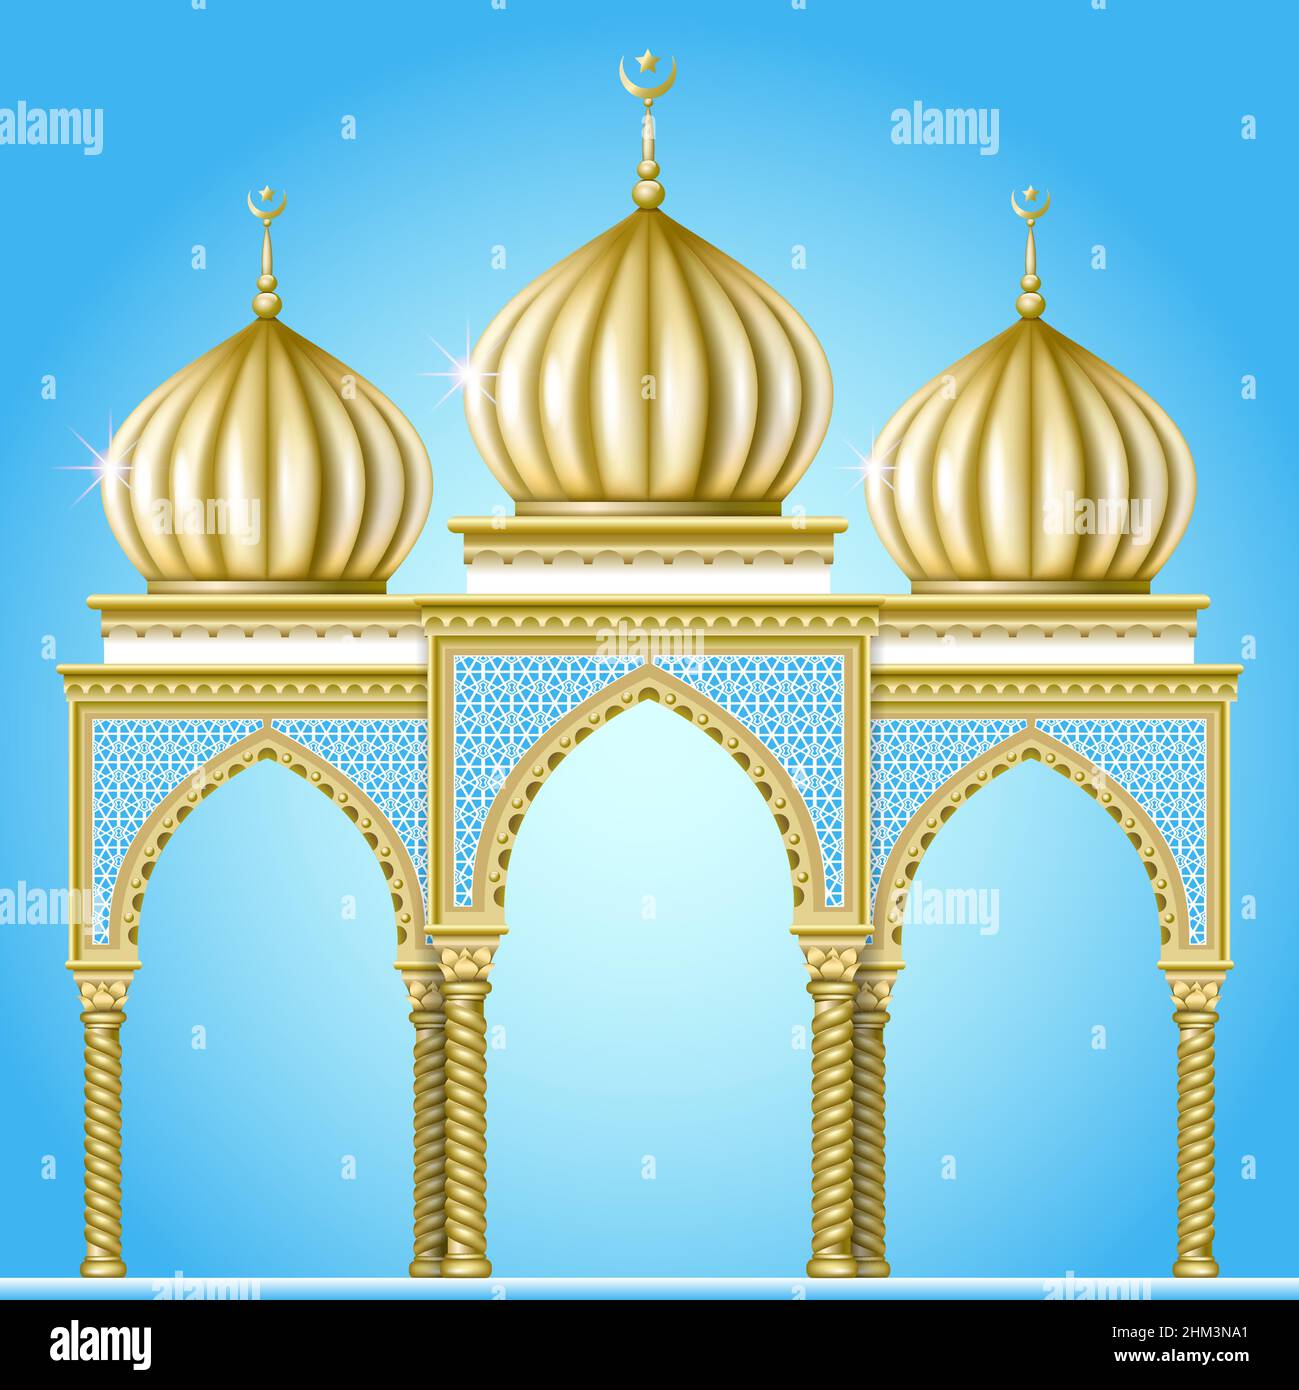 Garten oder religiöses Gebäude im orientalischen Stil mit goldenen Kuppeln und gewölbten Eingängen Stock Vektor